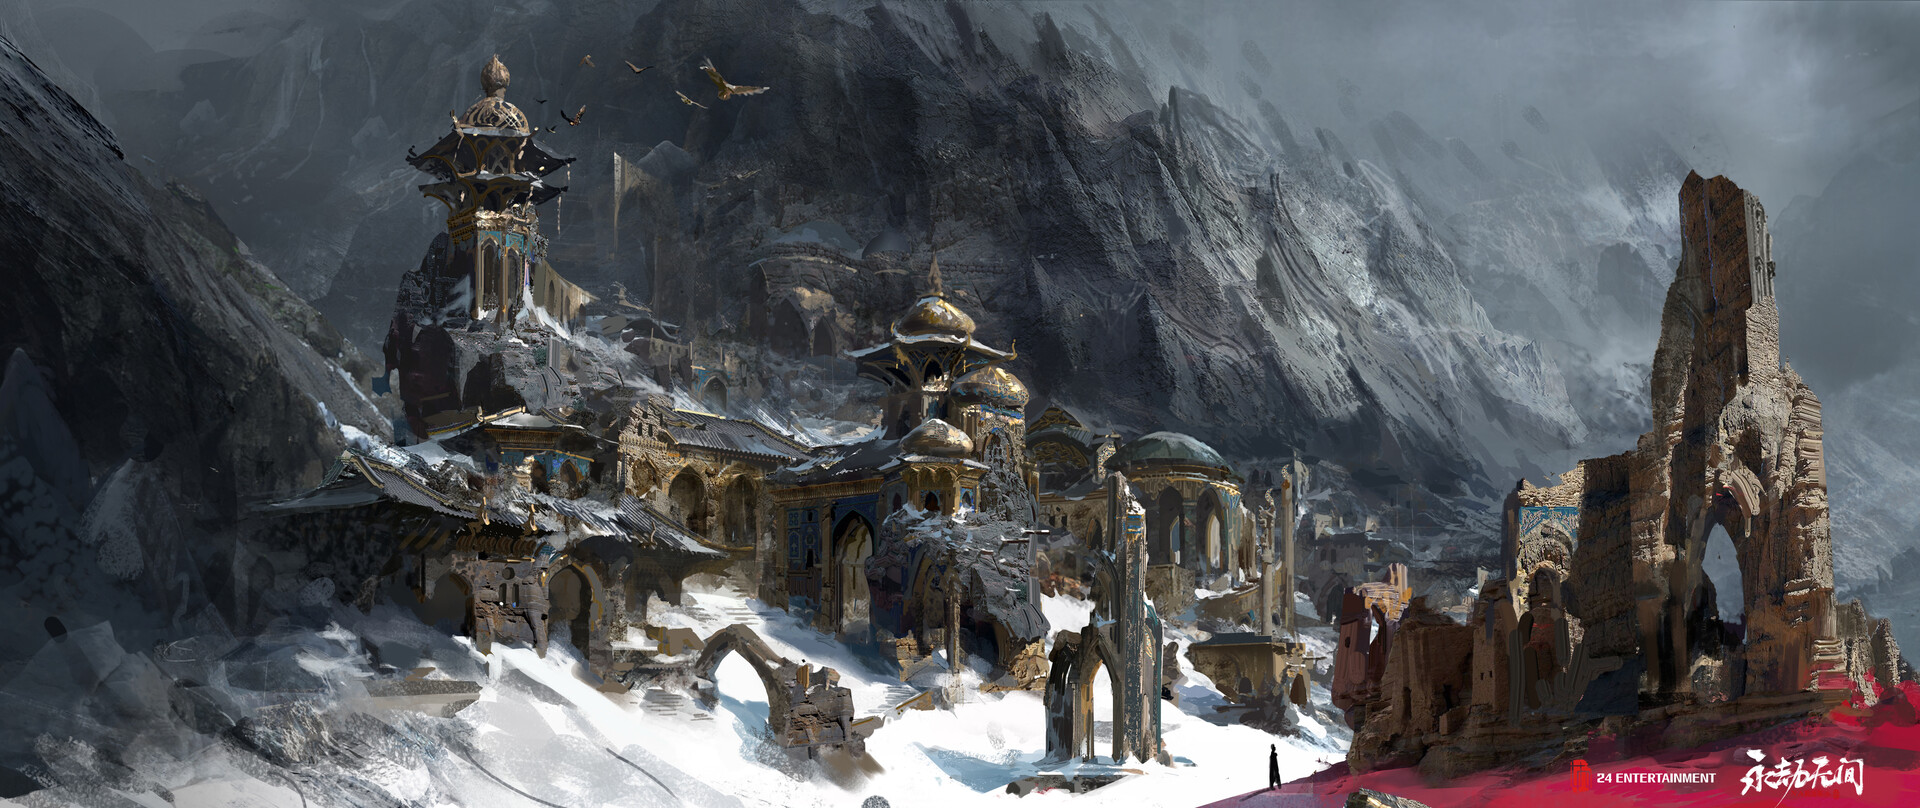 Artwork Fantasy Art Fantasy City Snow Ice Mountains 1920x808